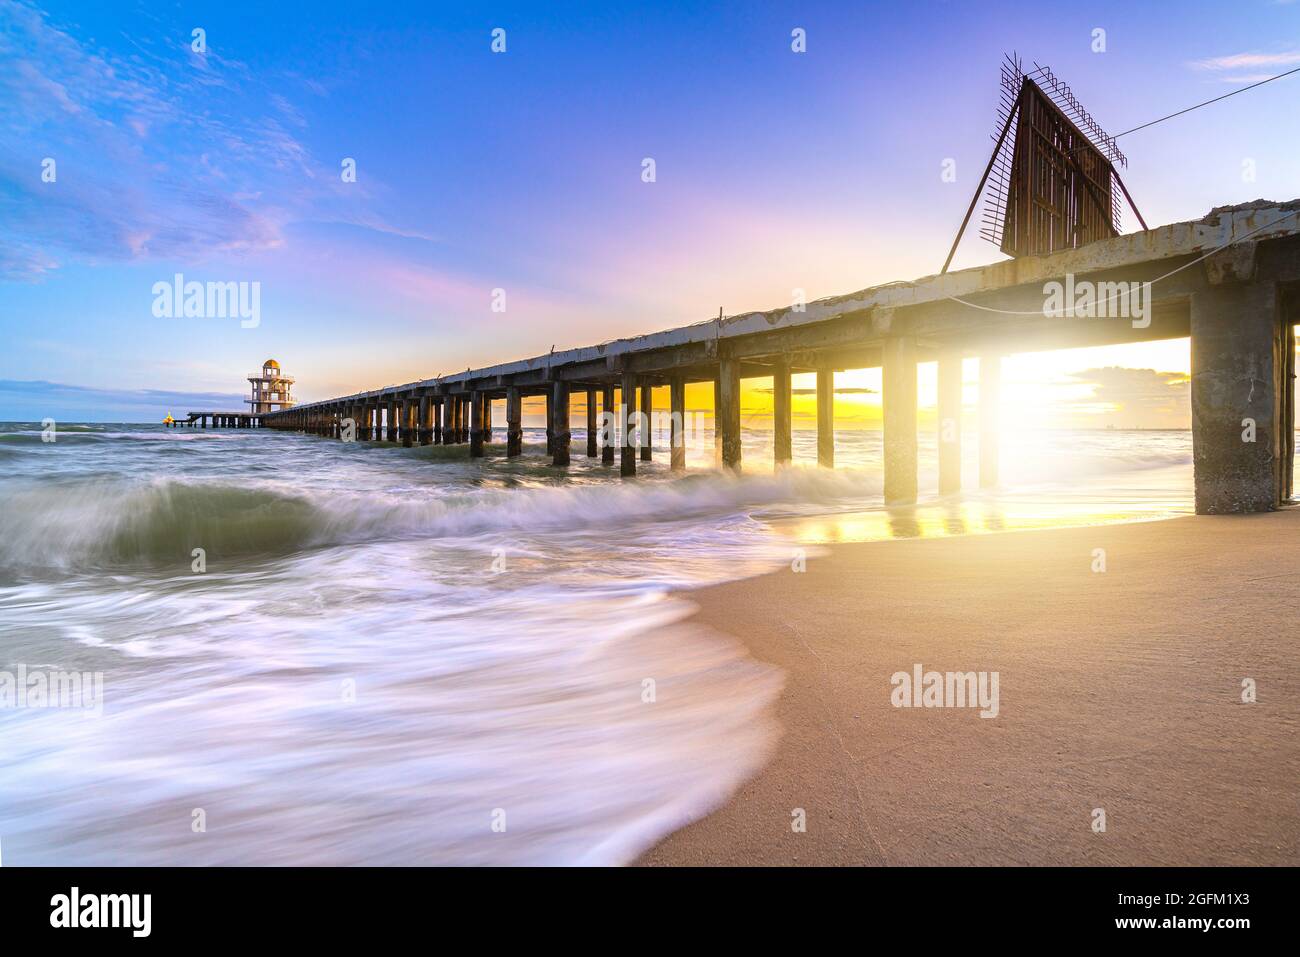 Wunderschöner Sonnenuntergang und sanfte Meereswelle am Strand mit Brückenhafen und Leuchtturm am Ende des Anlegesteg an der Meeresküste für den Transport mit Sonnenuntergang sk Stockfoto